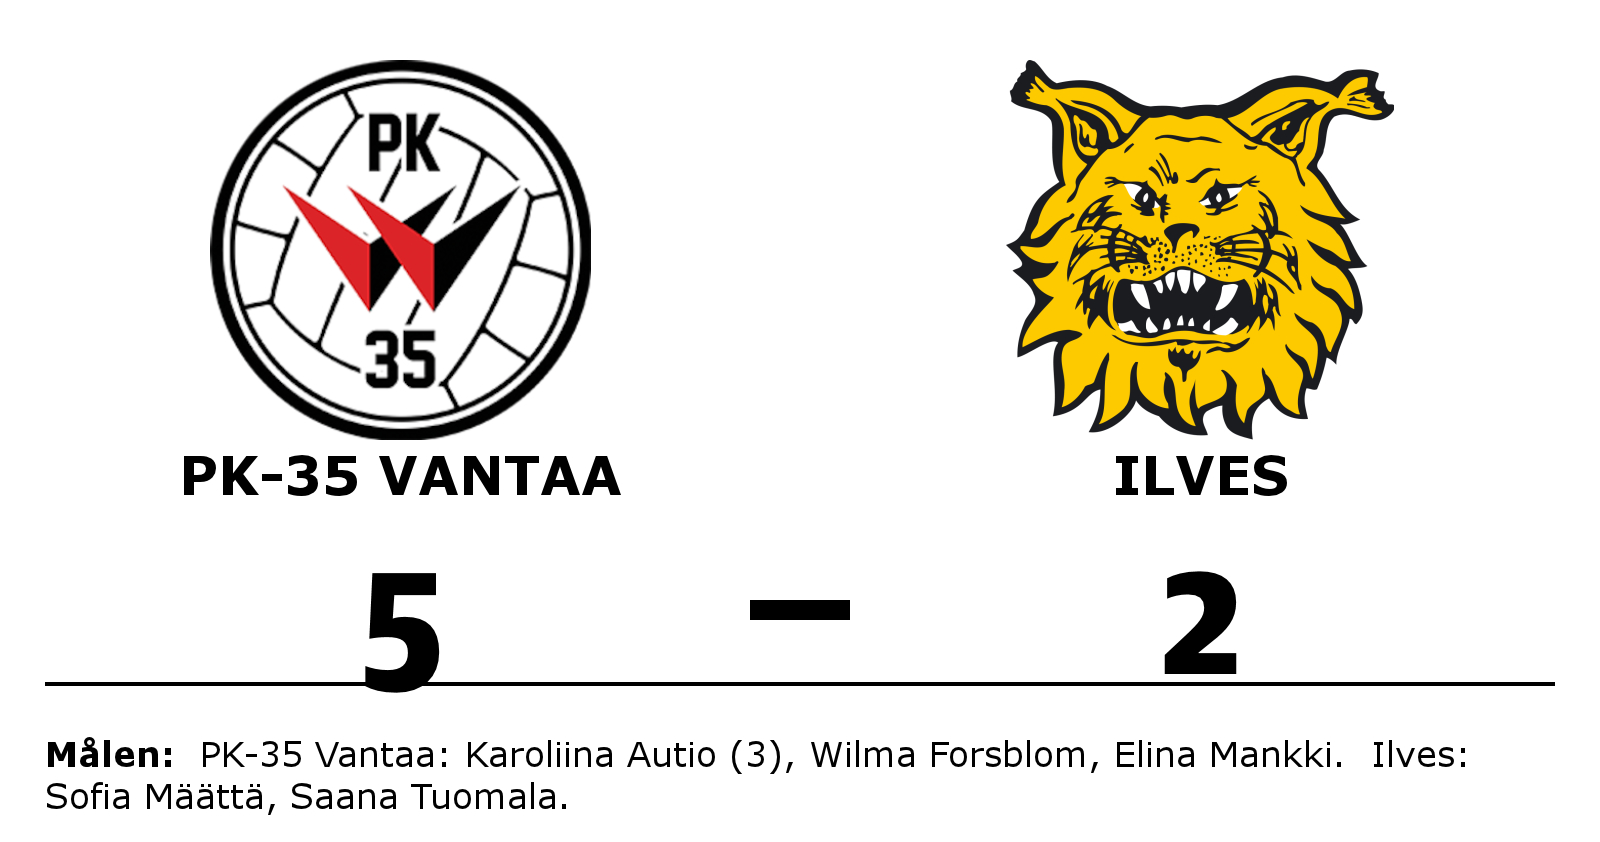 PK-35 Vantaa vann mot Ilves